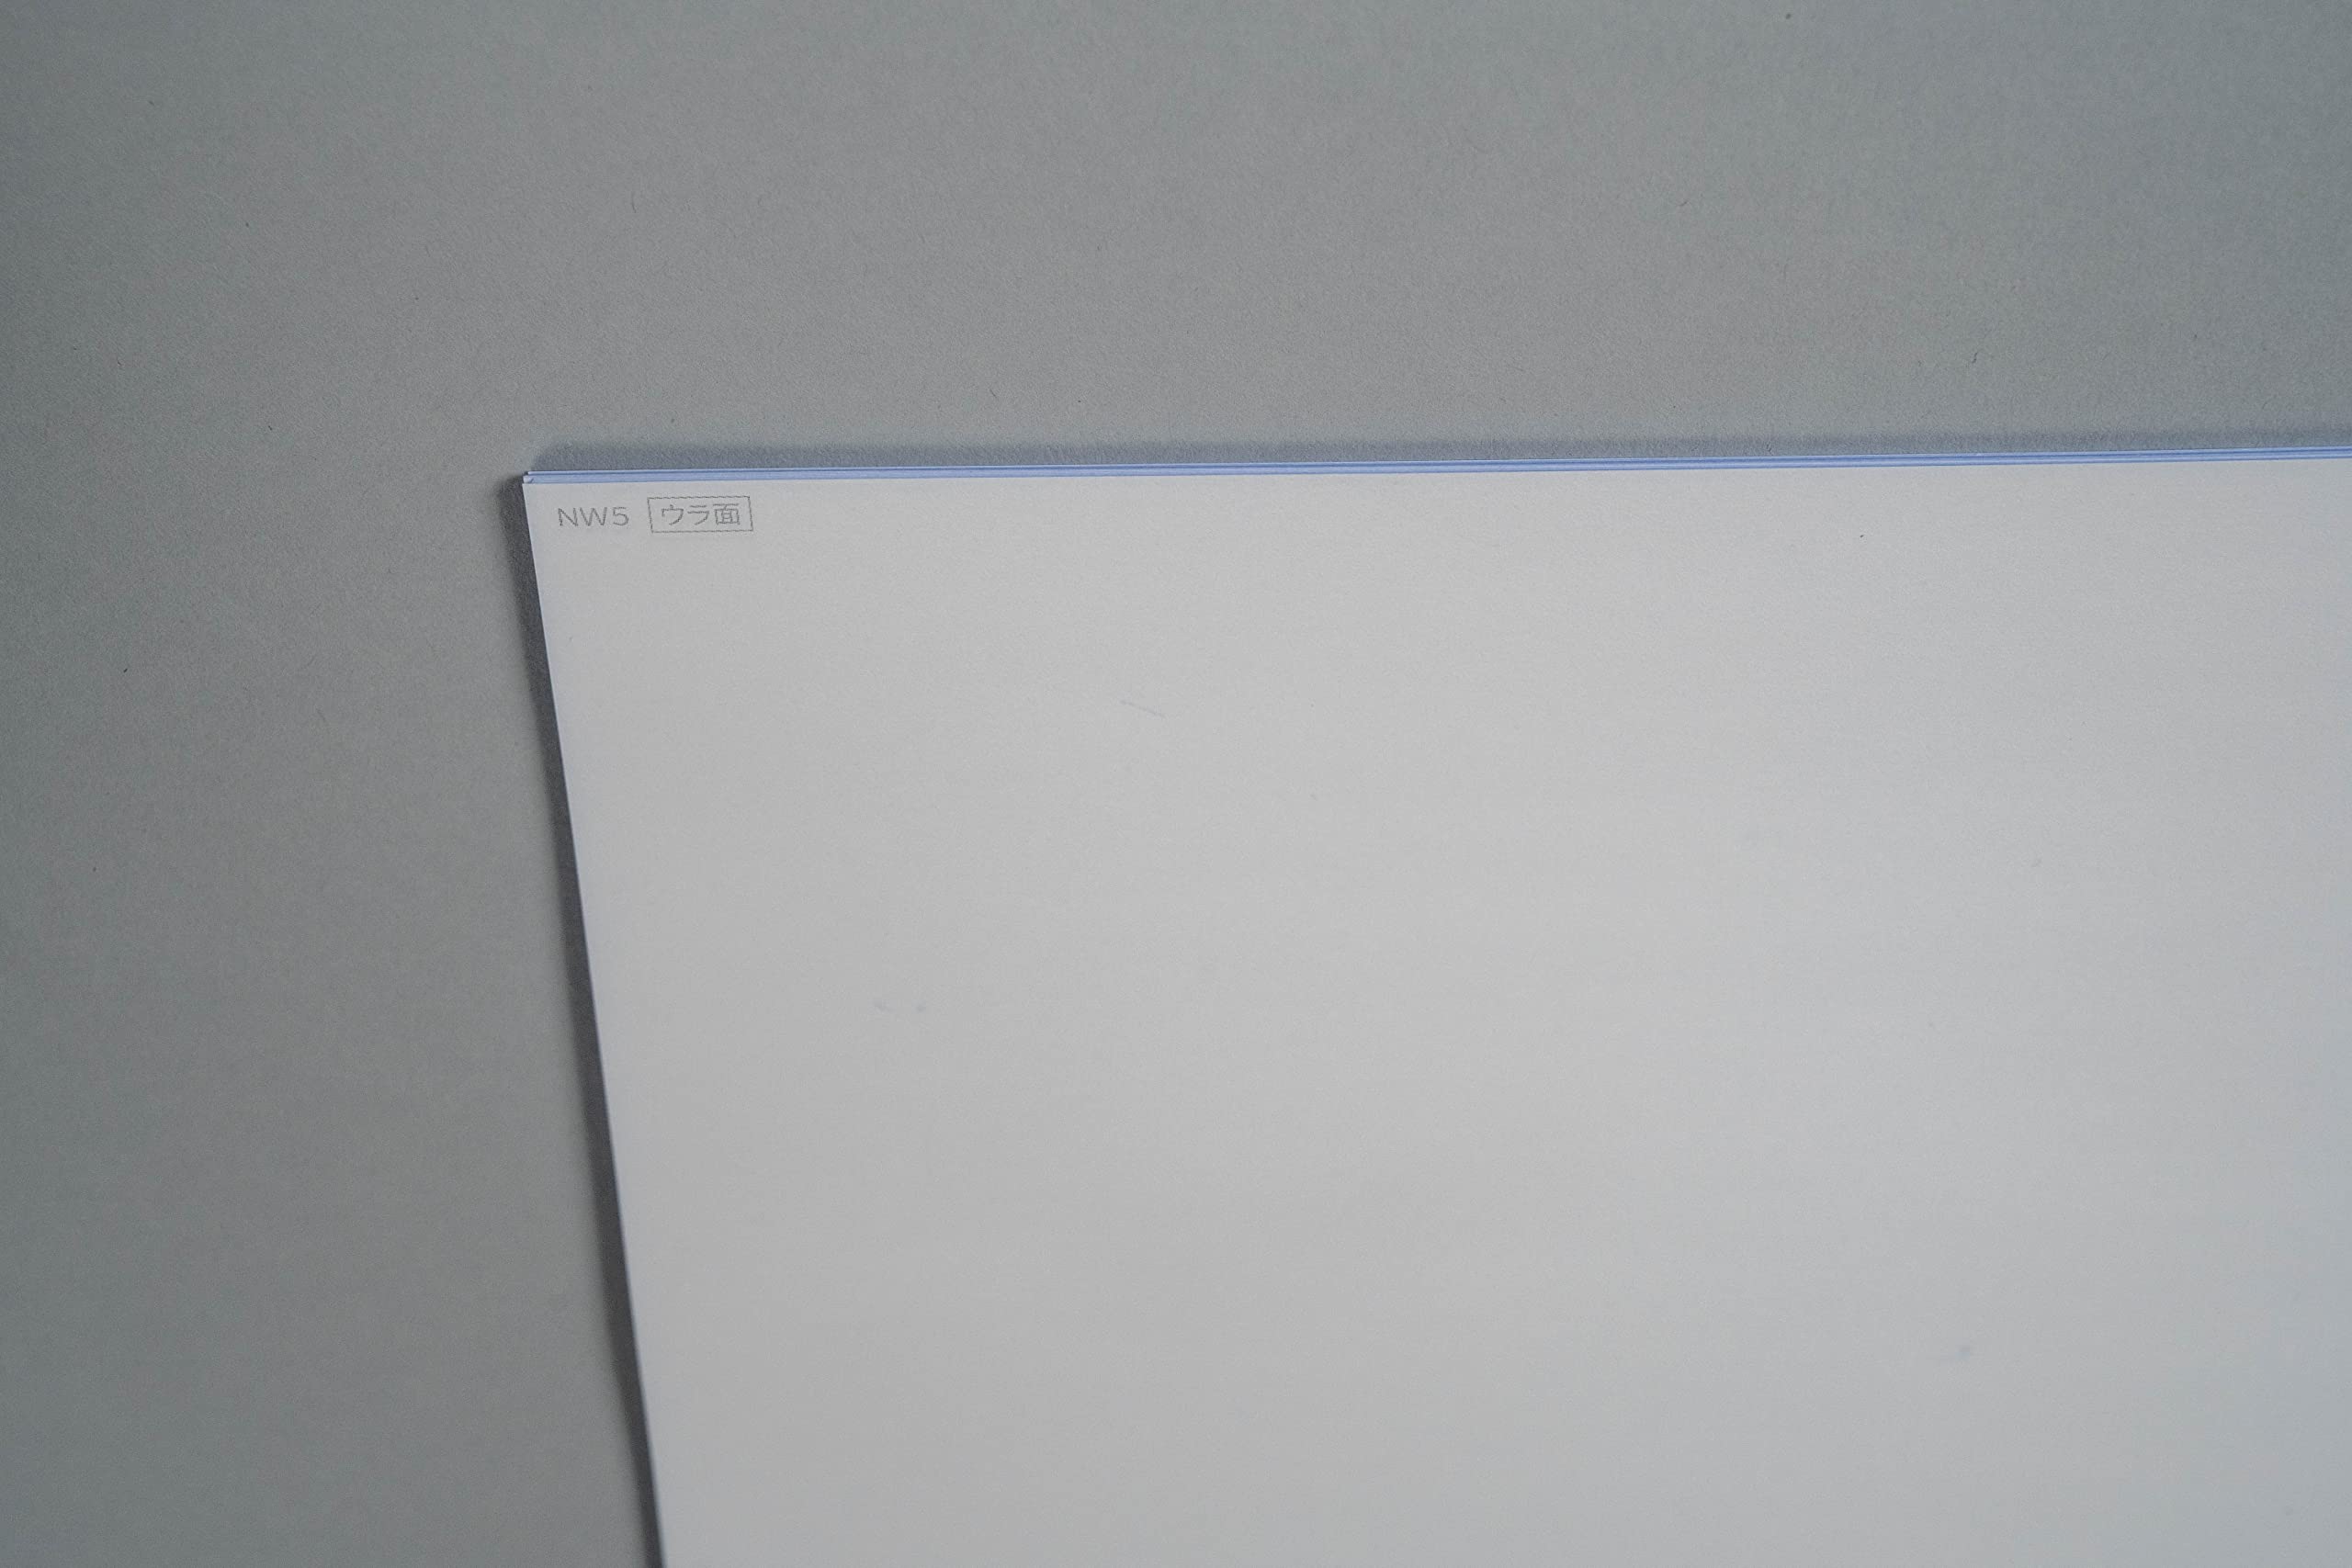 [ бумага Labo]no- карбоновый бумага A4 белый бумага (100 листов ) копирование бумага бумага labo